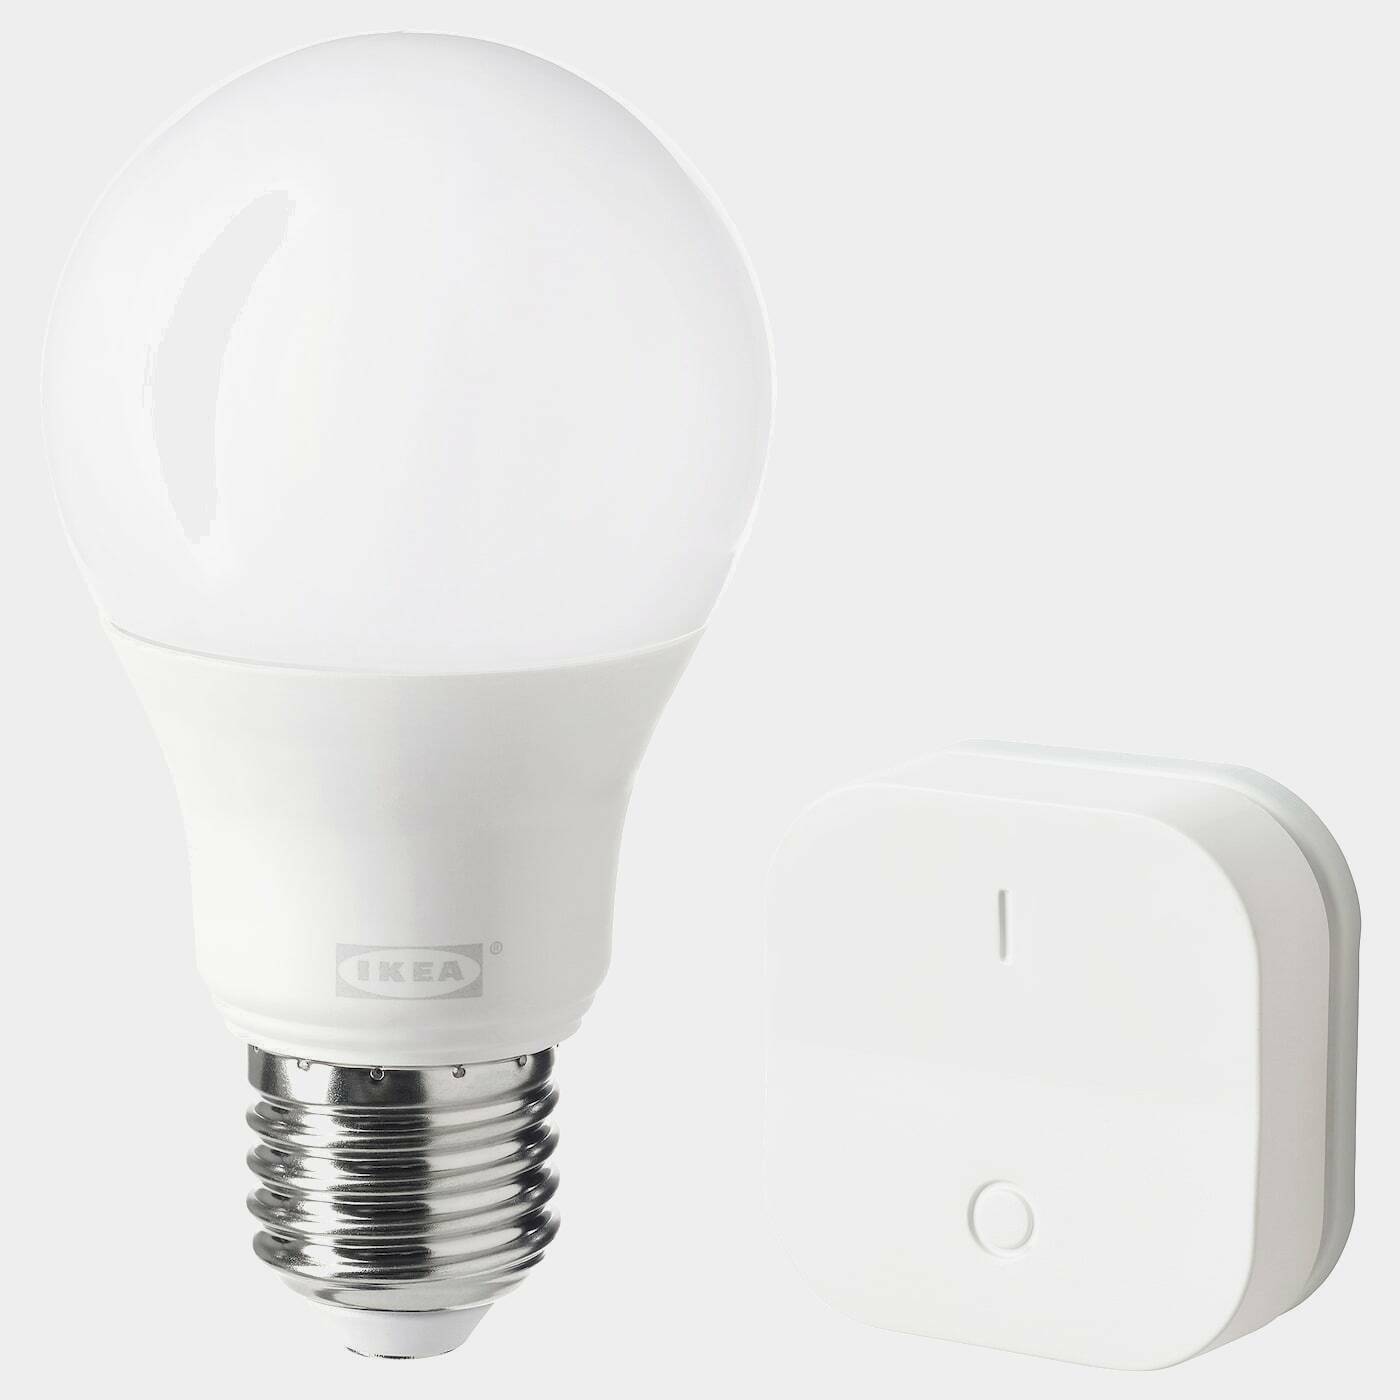 TRÅDFRI Set mit Dimmer  - IKEA Smart Home Beleuchtung - Heimelektronik Ideen für dein Zuhause von Home Trends. Heimelektronik Trends von Social Media Influencer für dein Skandi Zuhause.